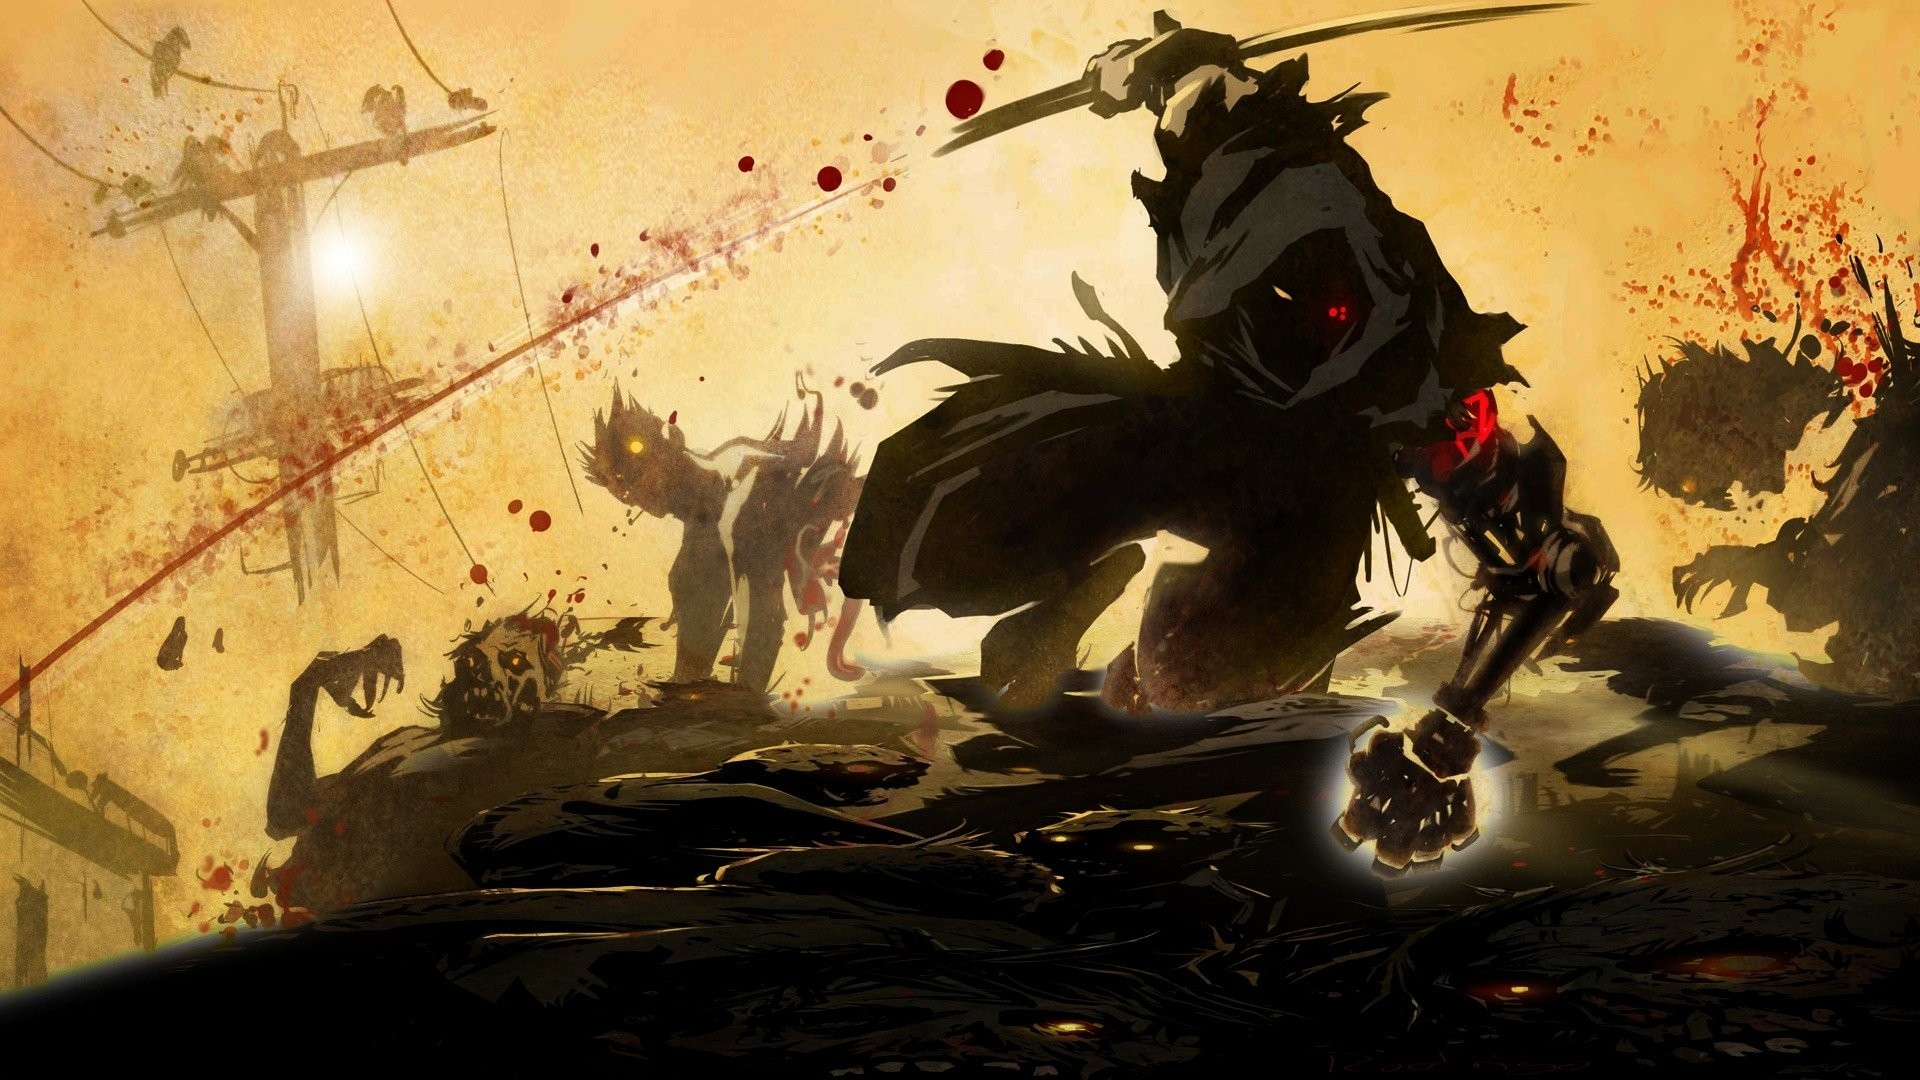 ninja assassin wallpaper,juego de acción y aventura,cg artwork,ilustración,diseño gráfico,juegos